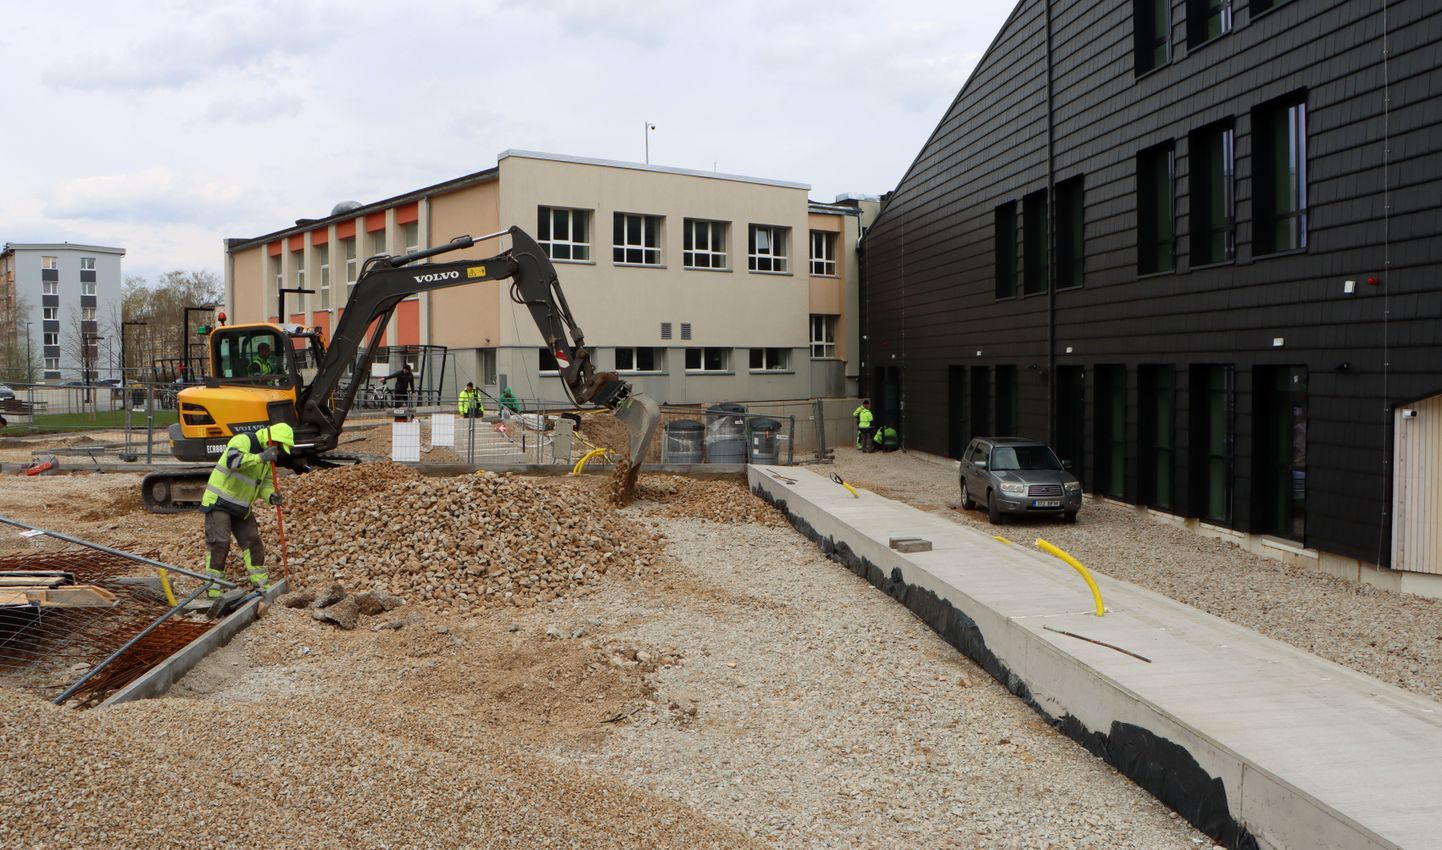 Йыхвиская основная школа переехала в начале года в новое здание, однако ее окрестности остаются большой стройплощадкой, на которой ведется обустройство уличной зоны.